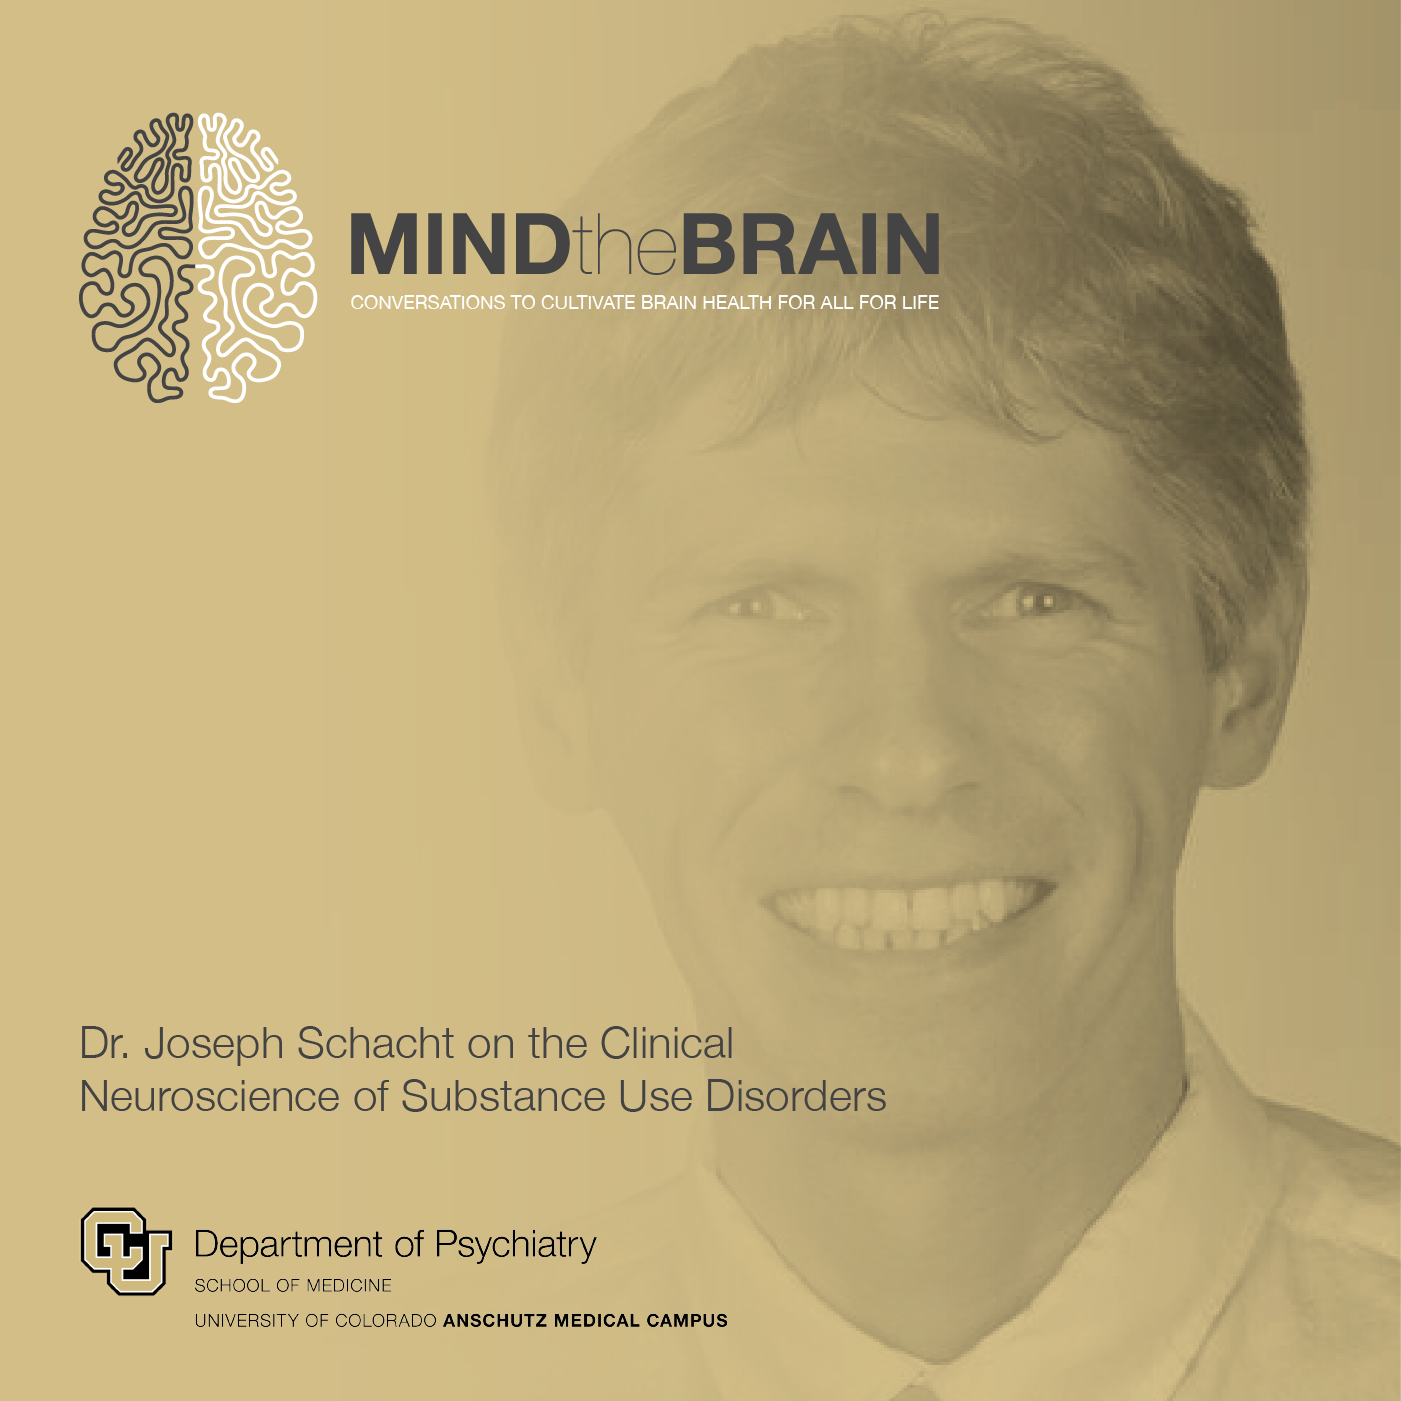 Dr. Joseph Schacht